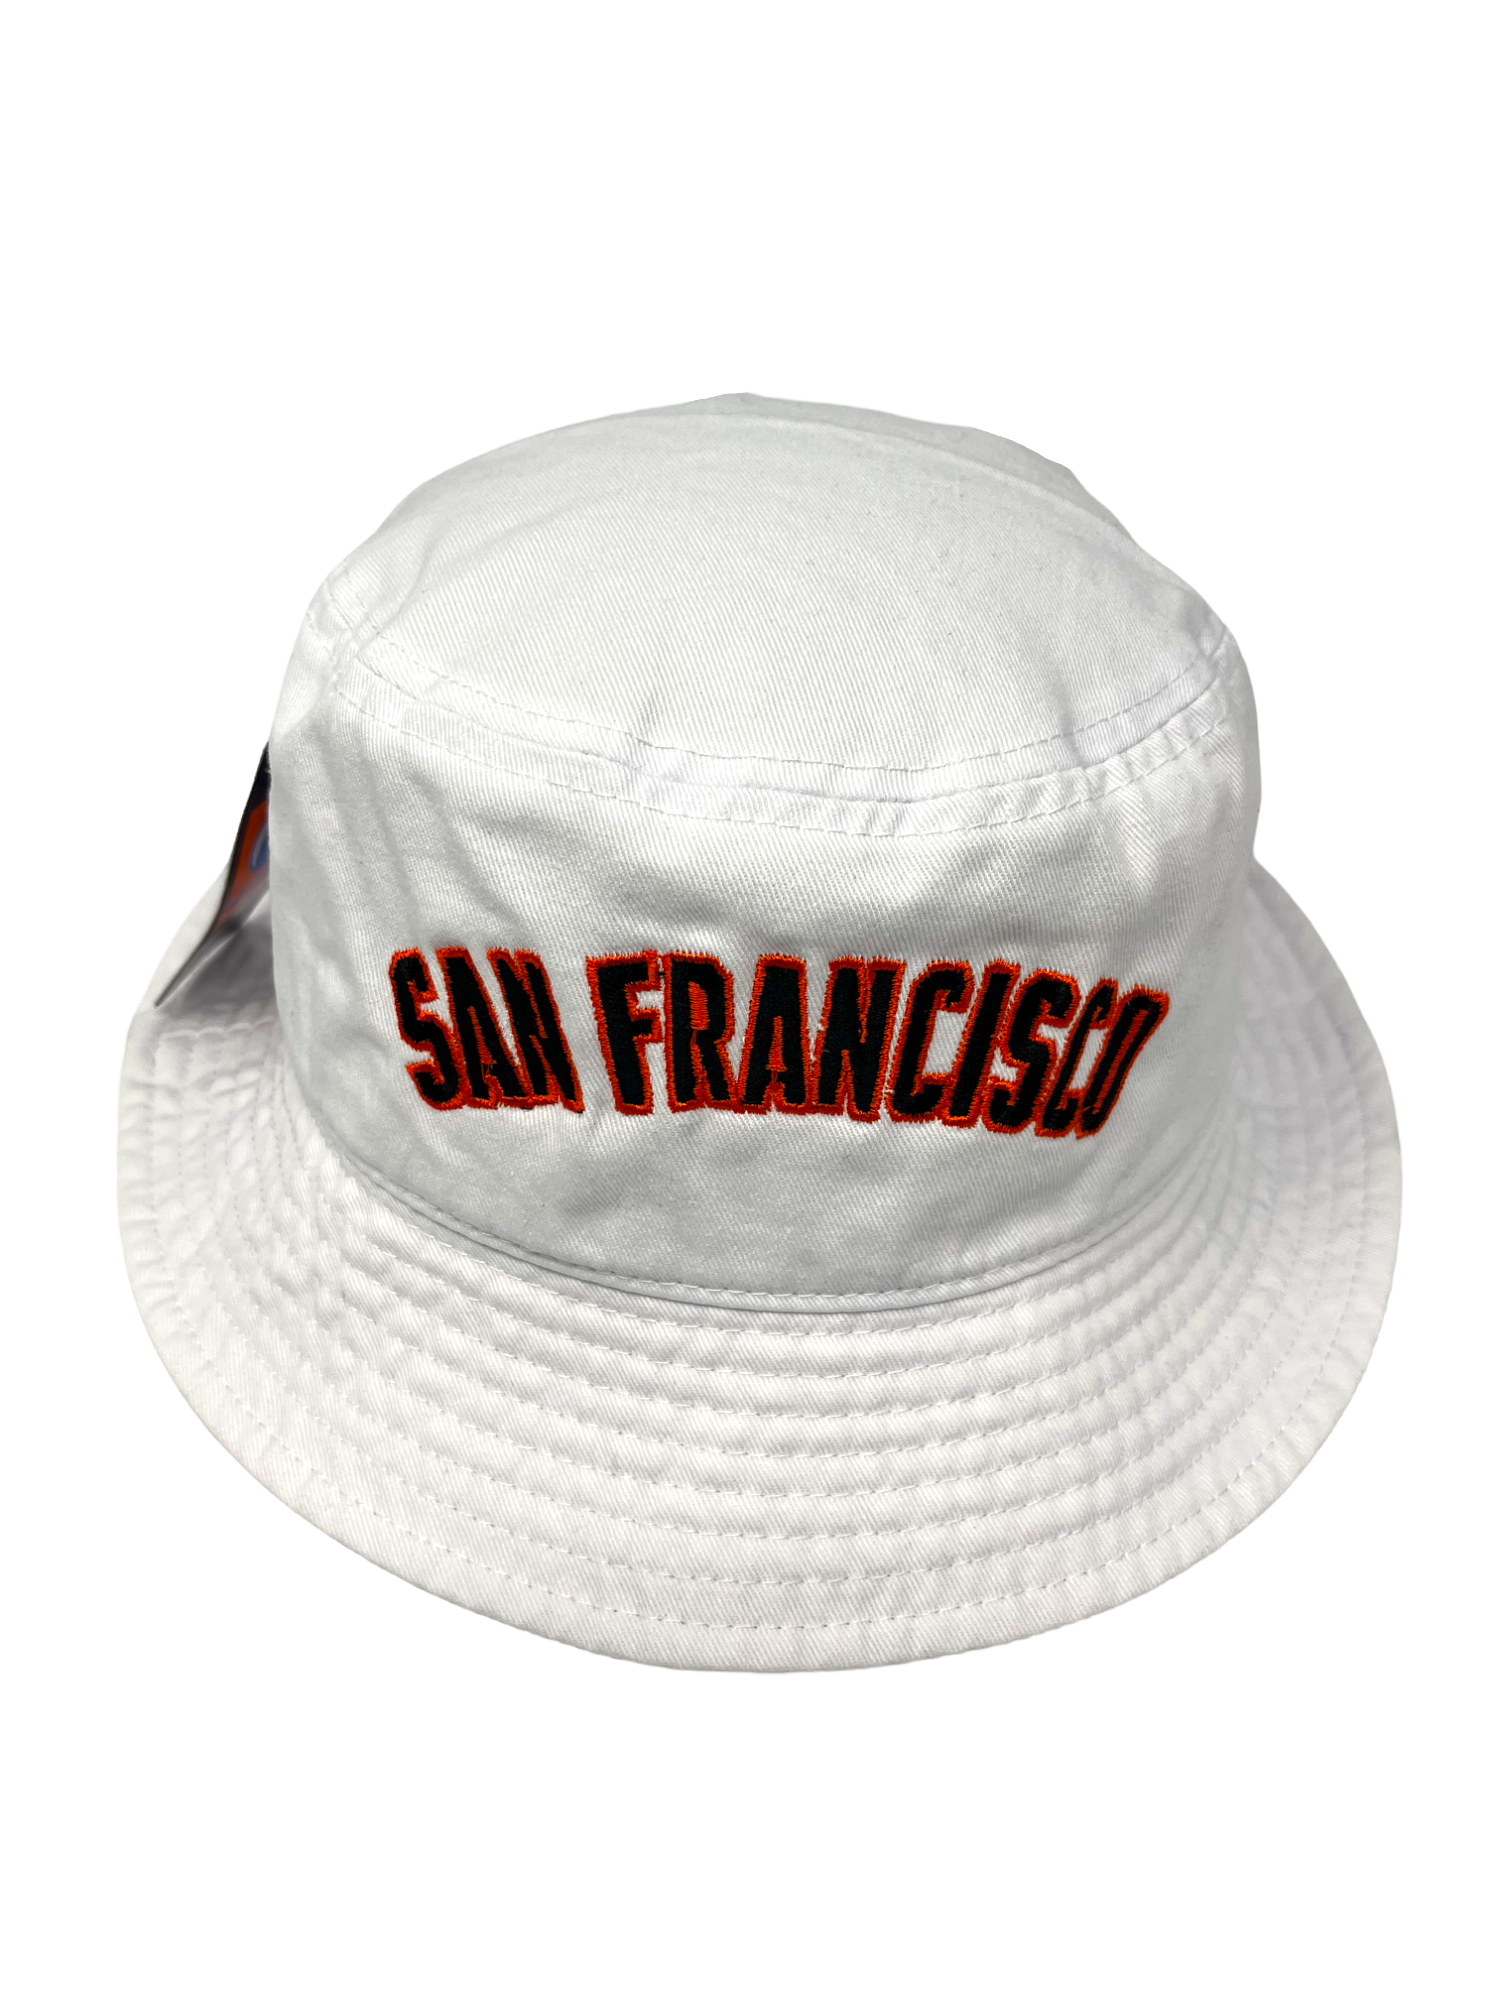 sf giants bucket hat